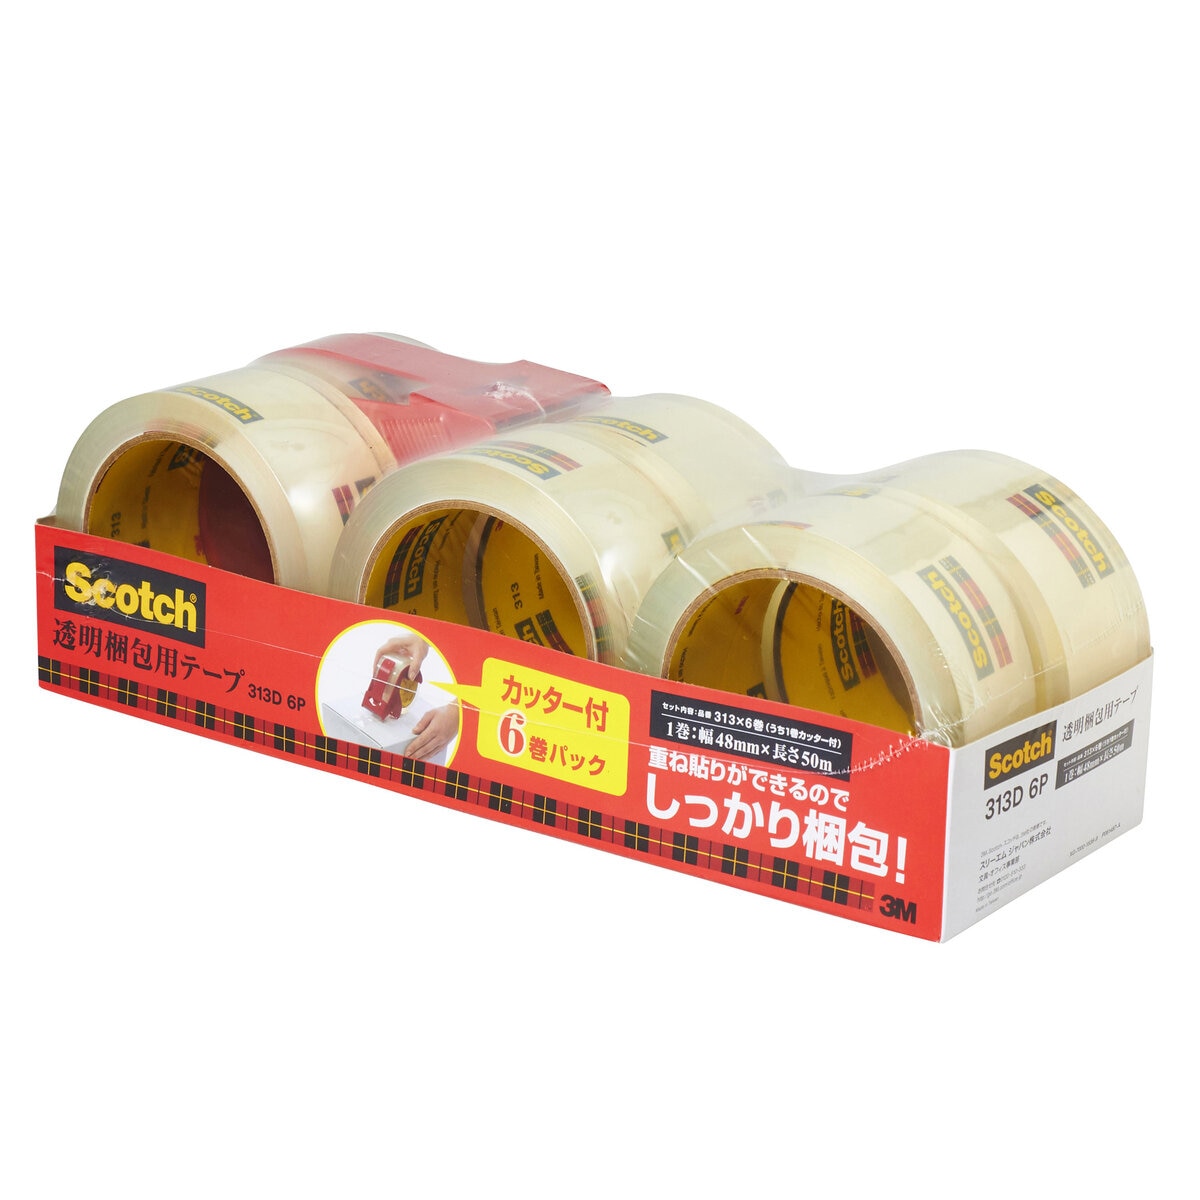 スリーエム スコッチ梱包用テープ 6巻セット カッター付き Costco Japan